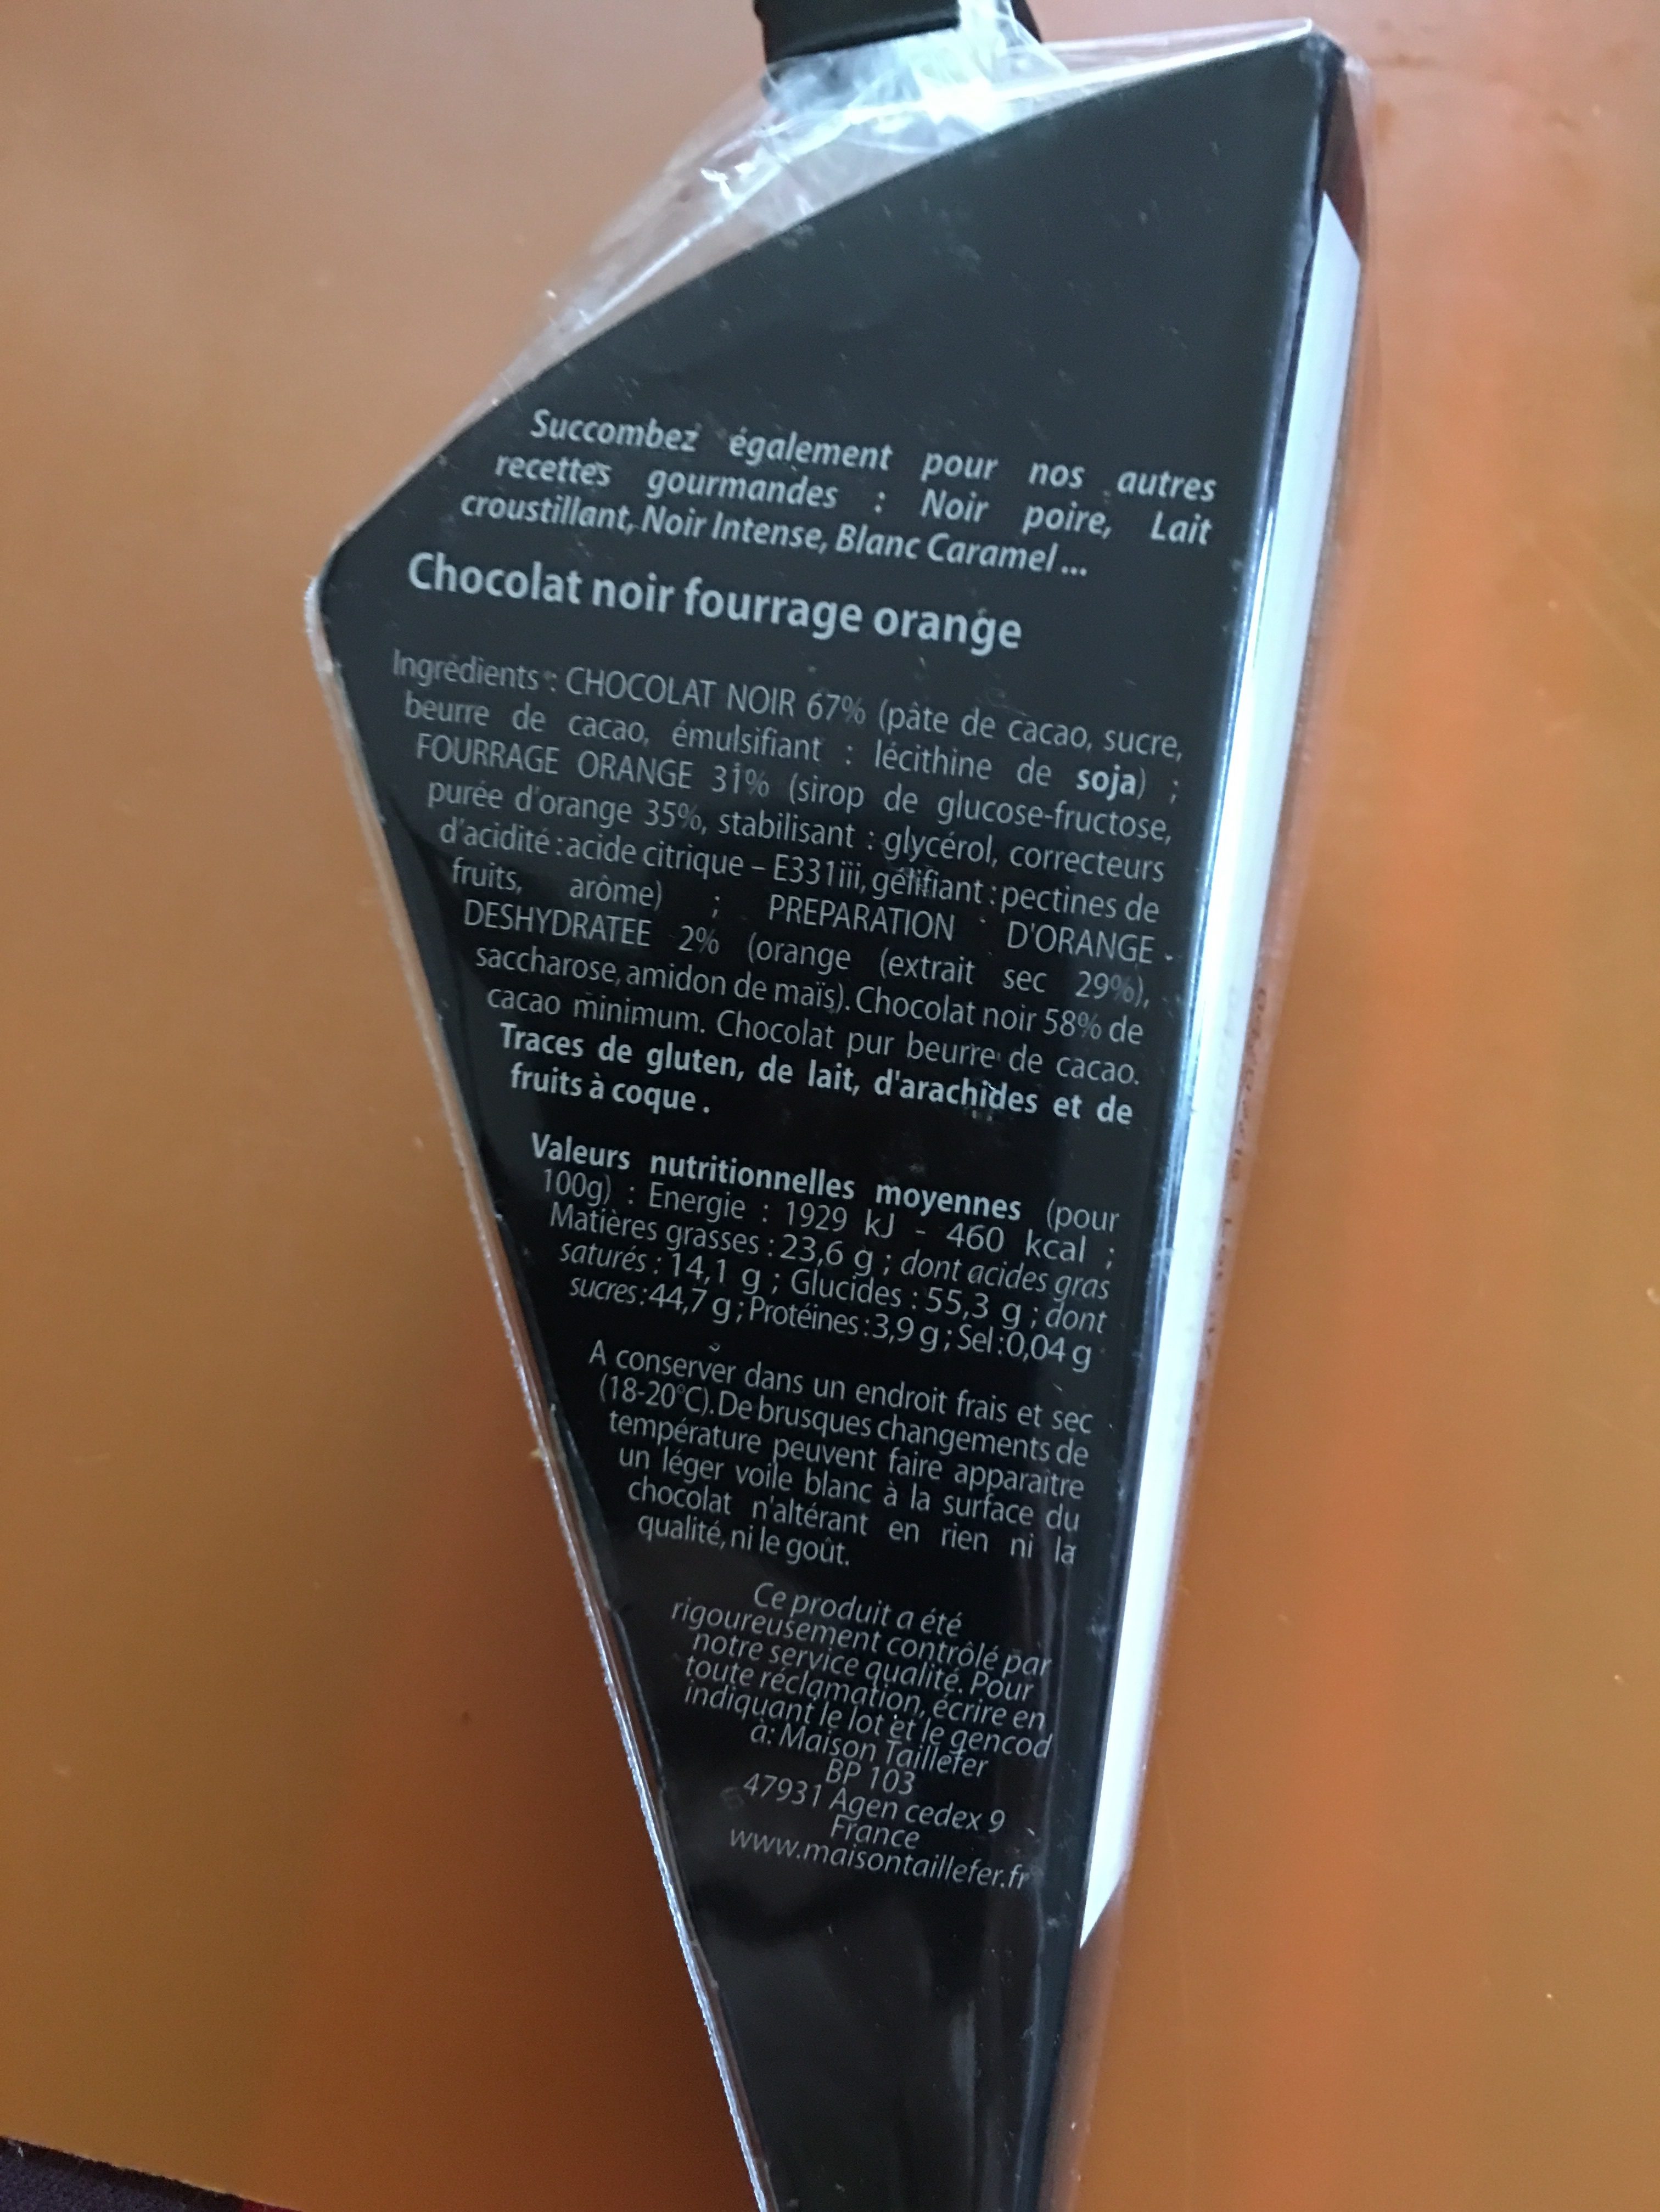 Maison Taillefer Chocolat Noir Orange Cornet 150G - Ingredients - fr